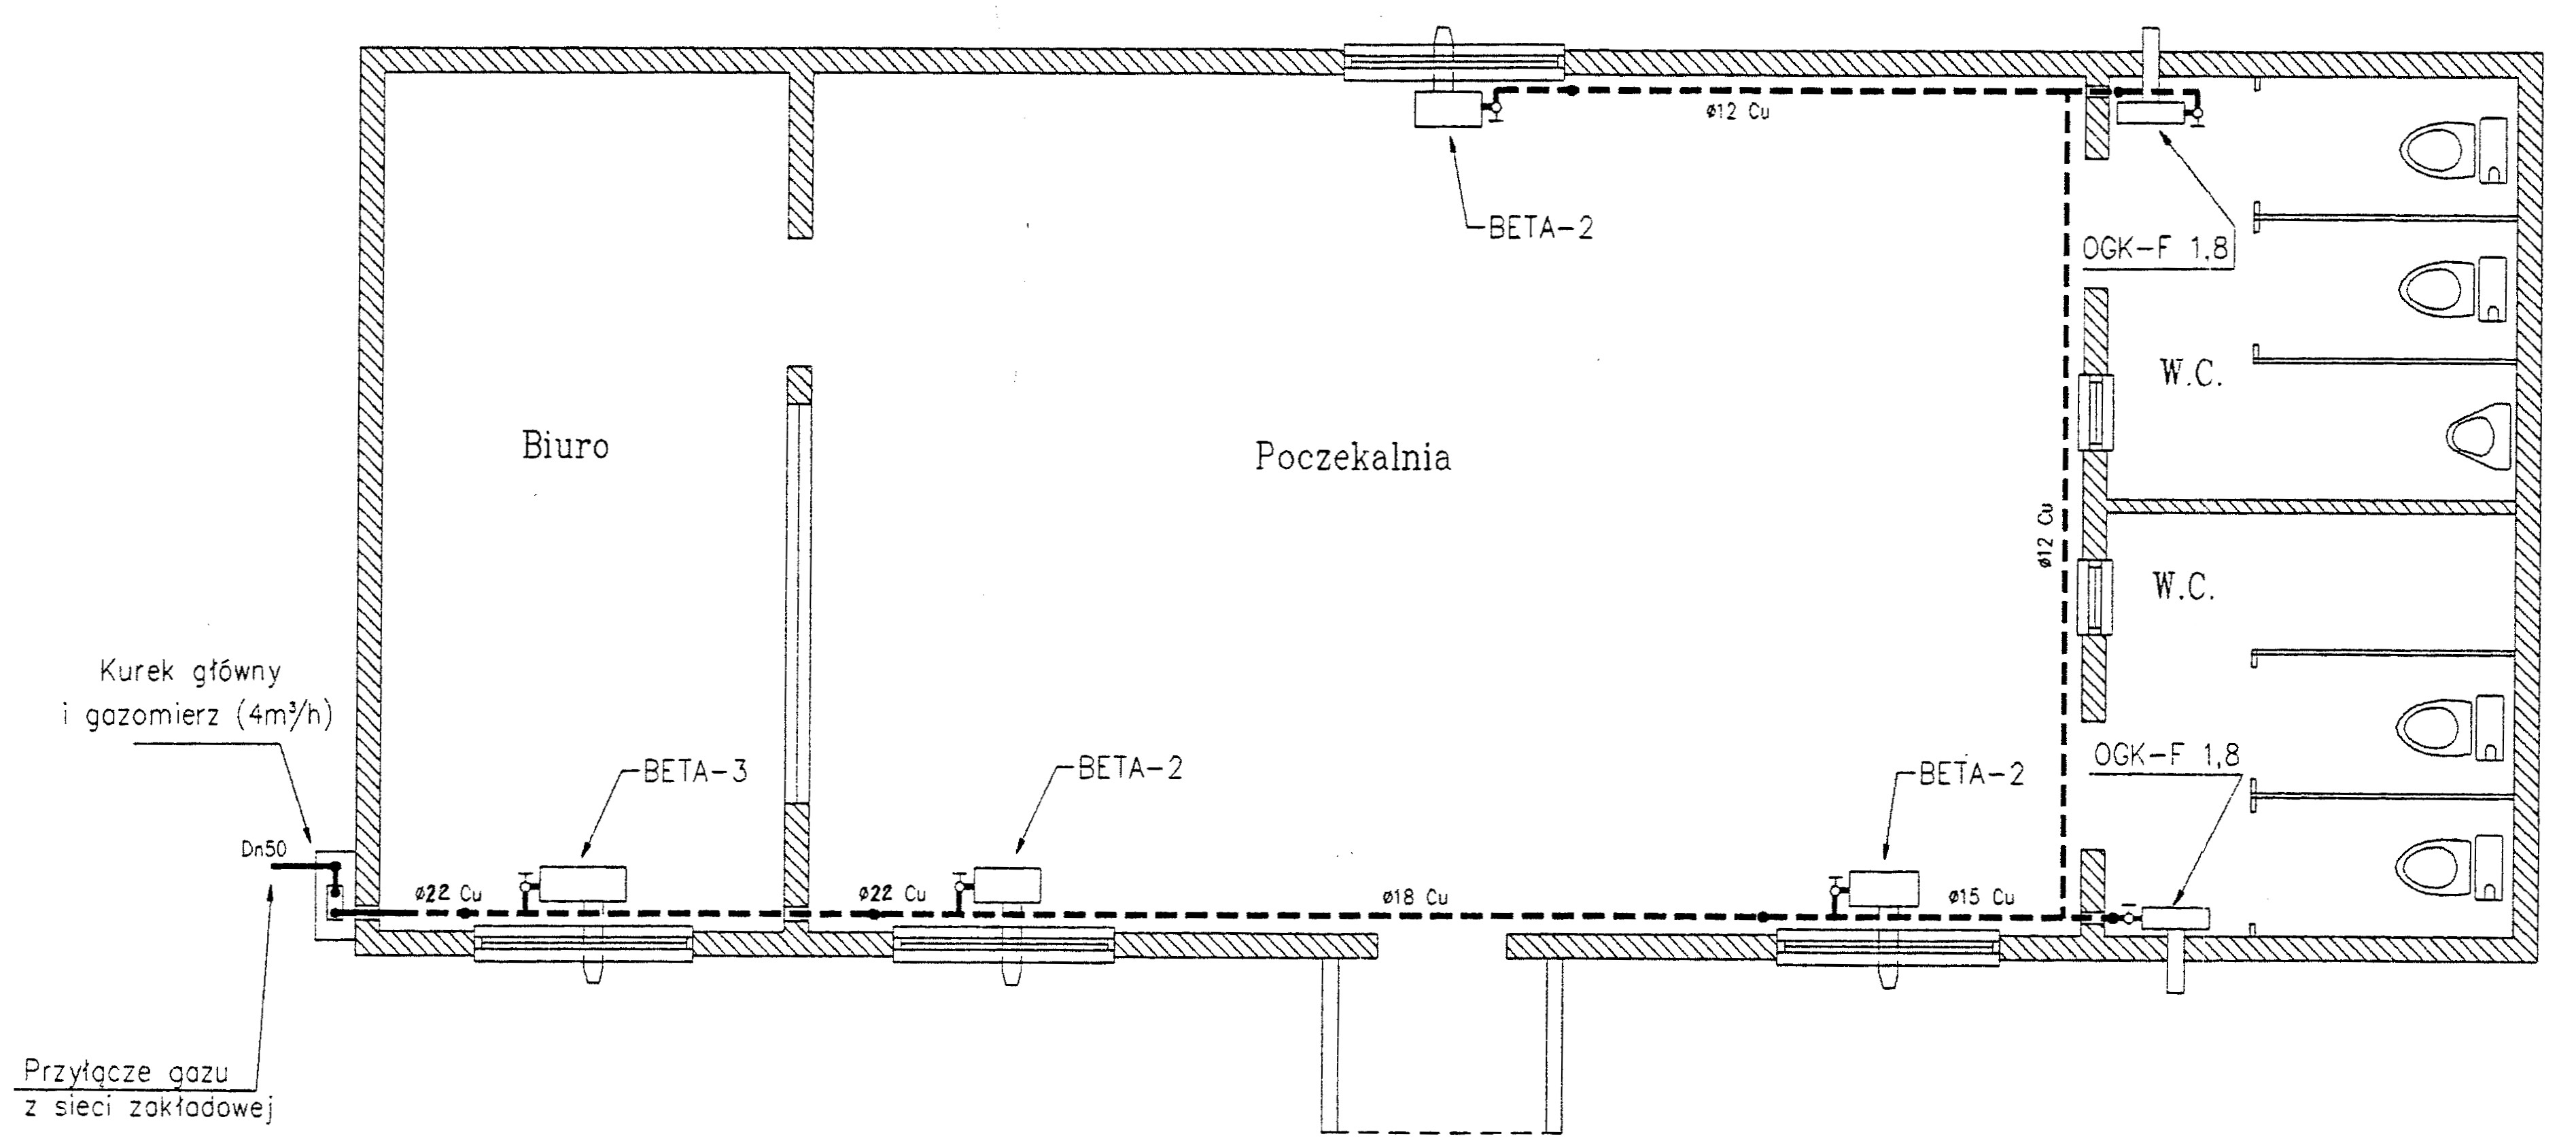 R4 Gliwice - plan budynku kontenerowego